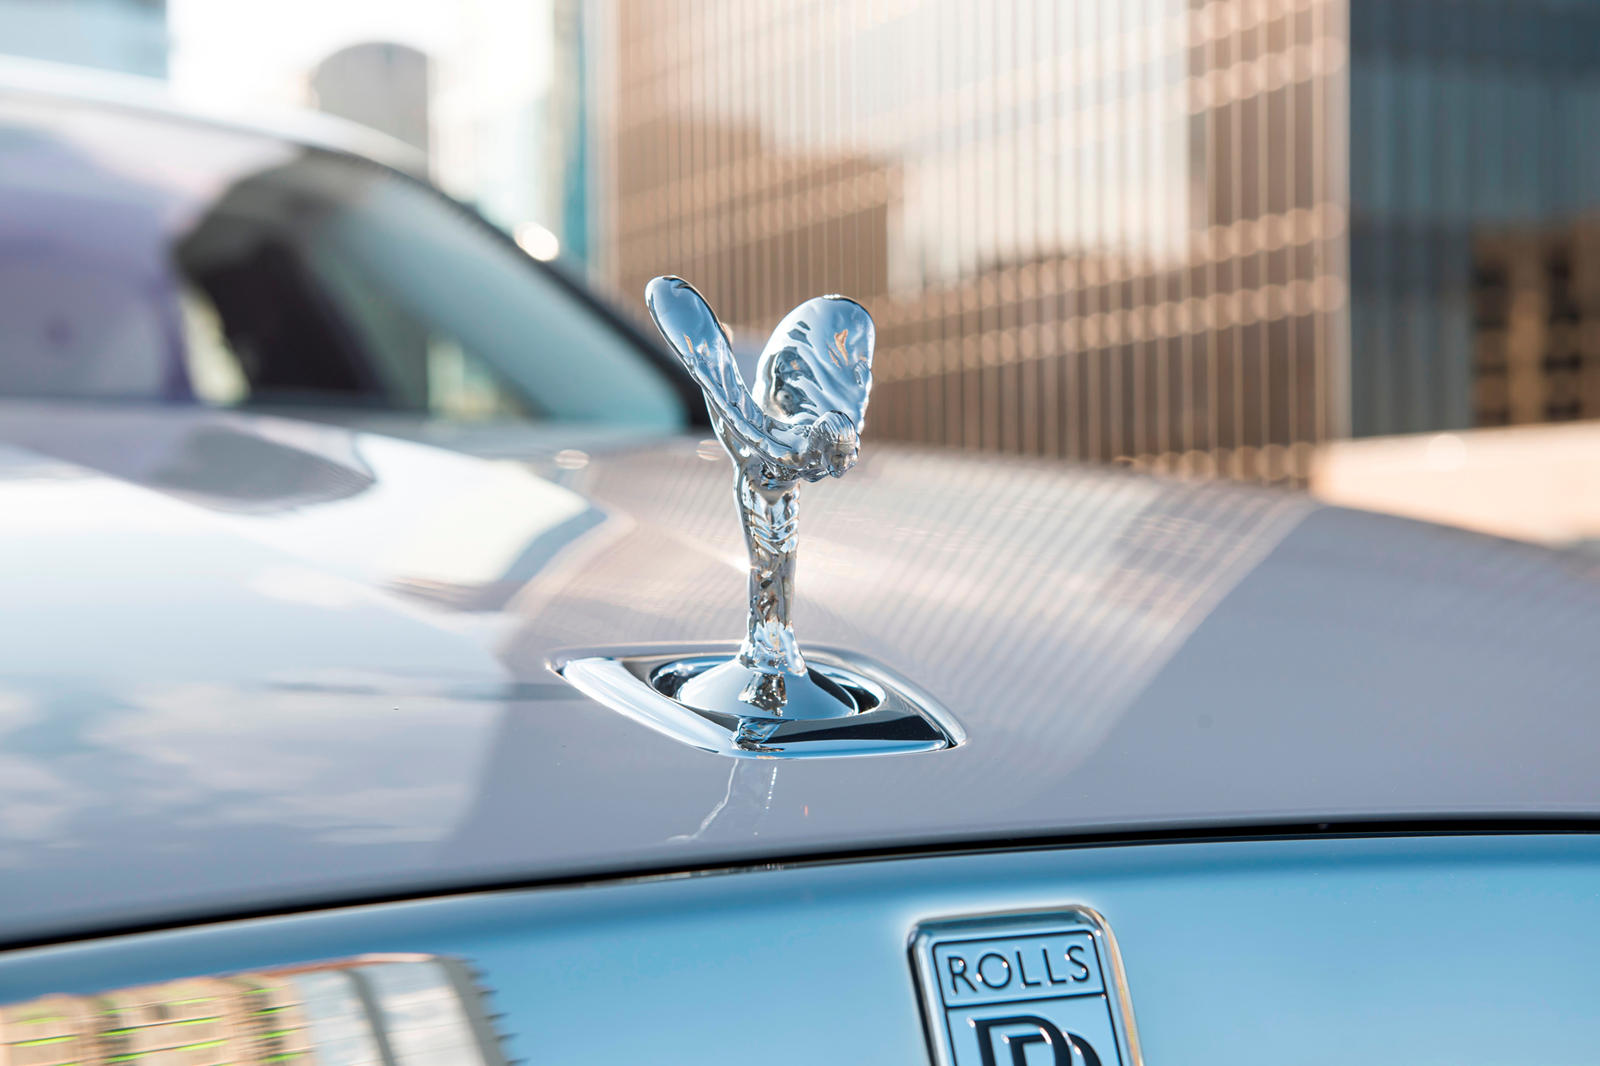 Компания Rolls-Royce подтвердила, что прекратила производство светящейся версии своей легендарной эмблемы и что все клиенты, выбравшие эту опцию, получат полный возврат средств и замену не светящийся элемент, несмотря на то, что эта опция все еще ото